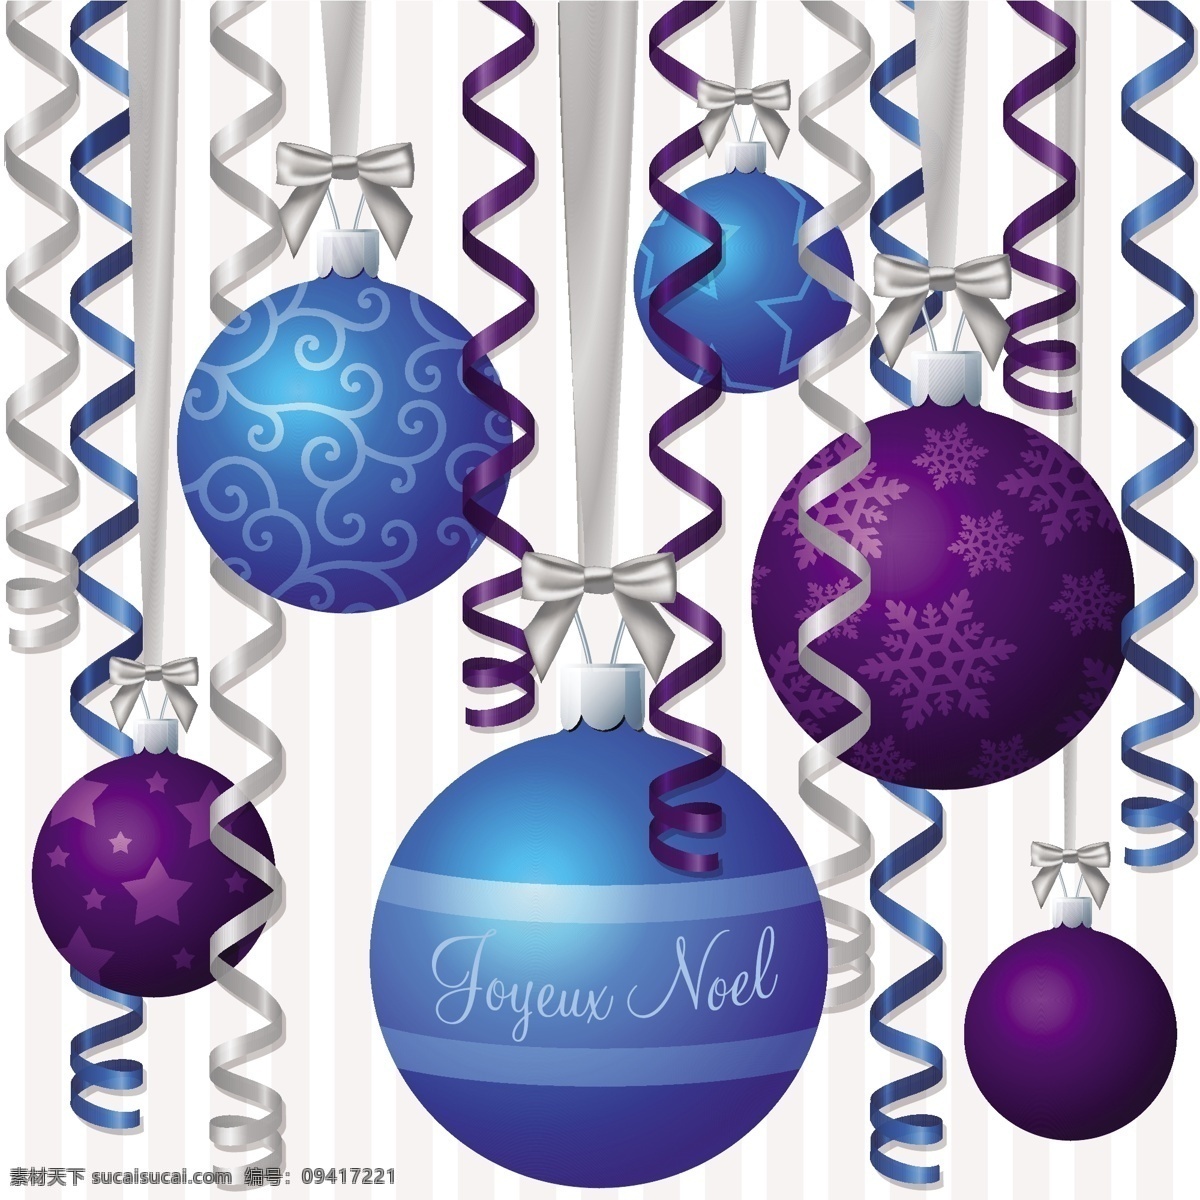 法国 蓝色 紫色 丝带 双重 激励 矢量 格式 圣诞卡 矢量图 日常生活